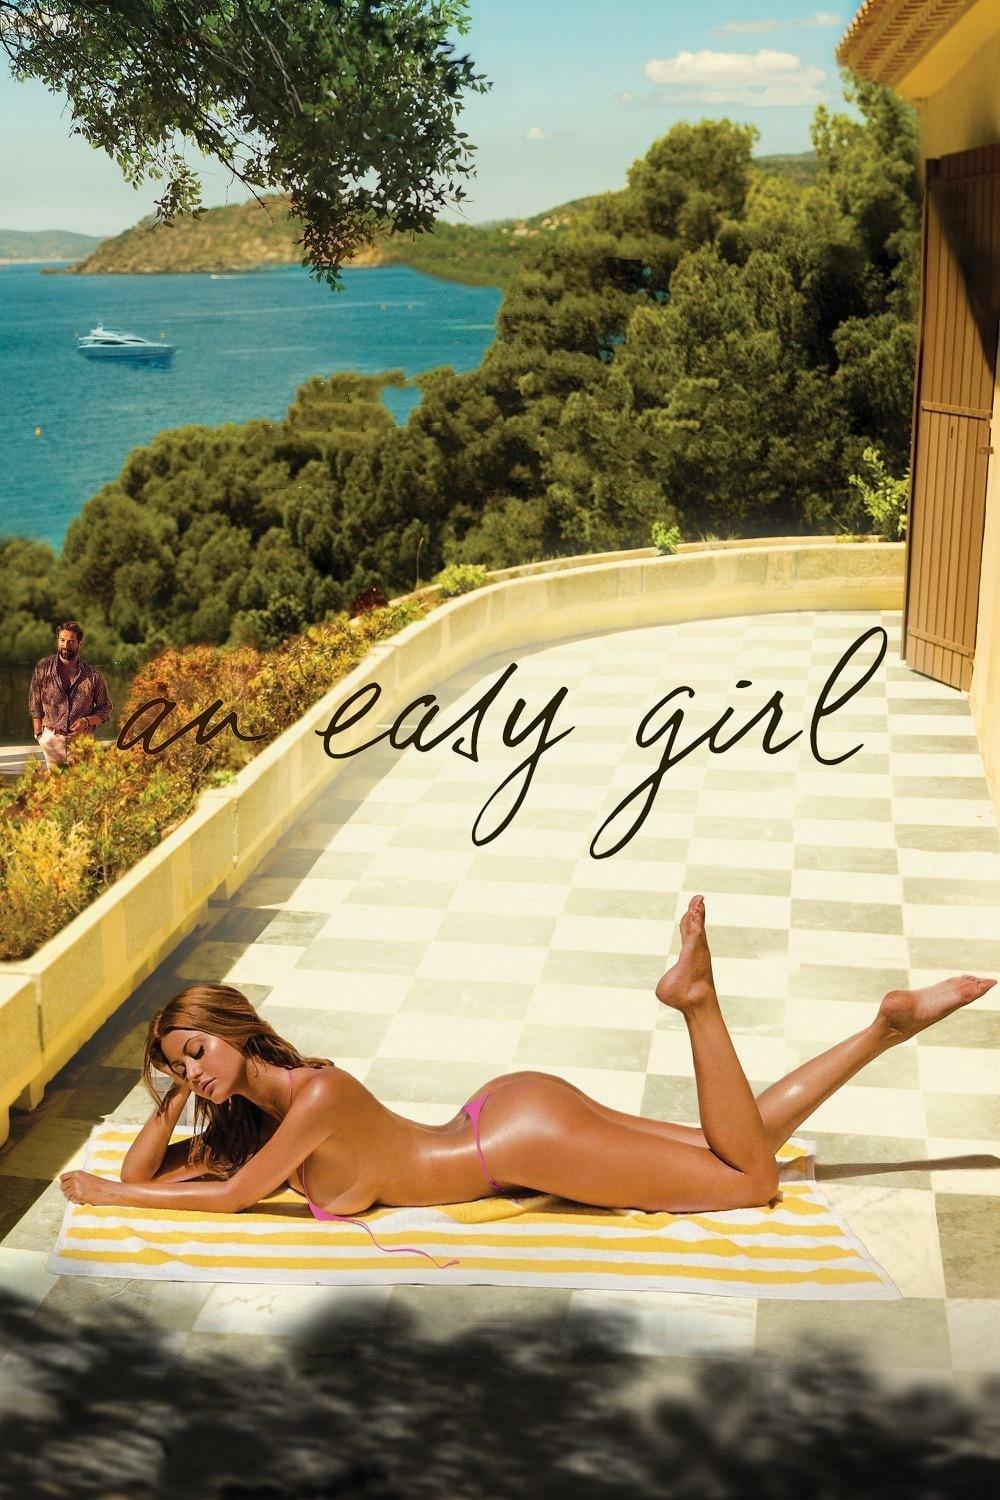 An Easy Girl poster